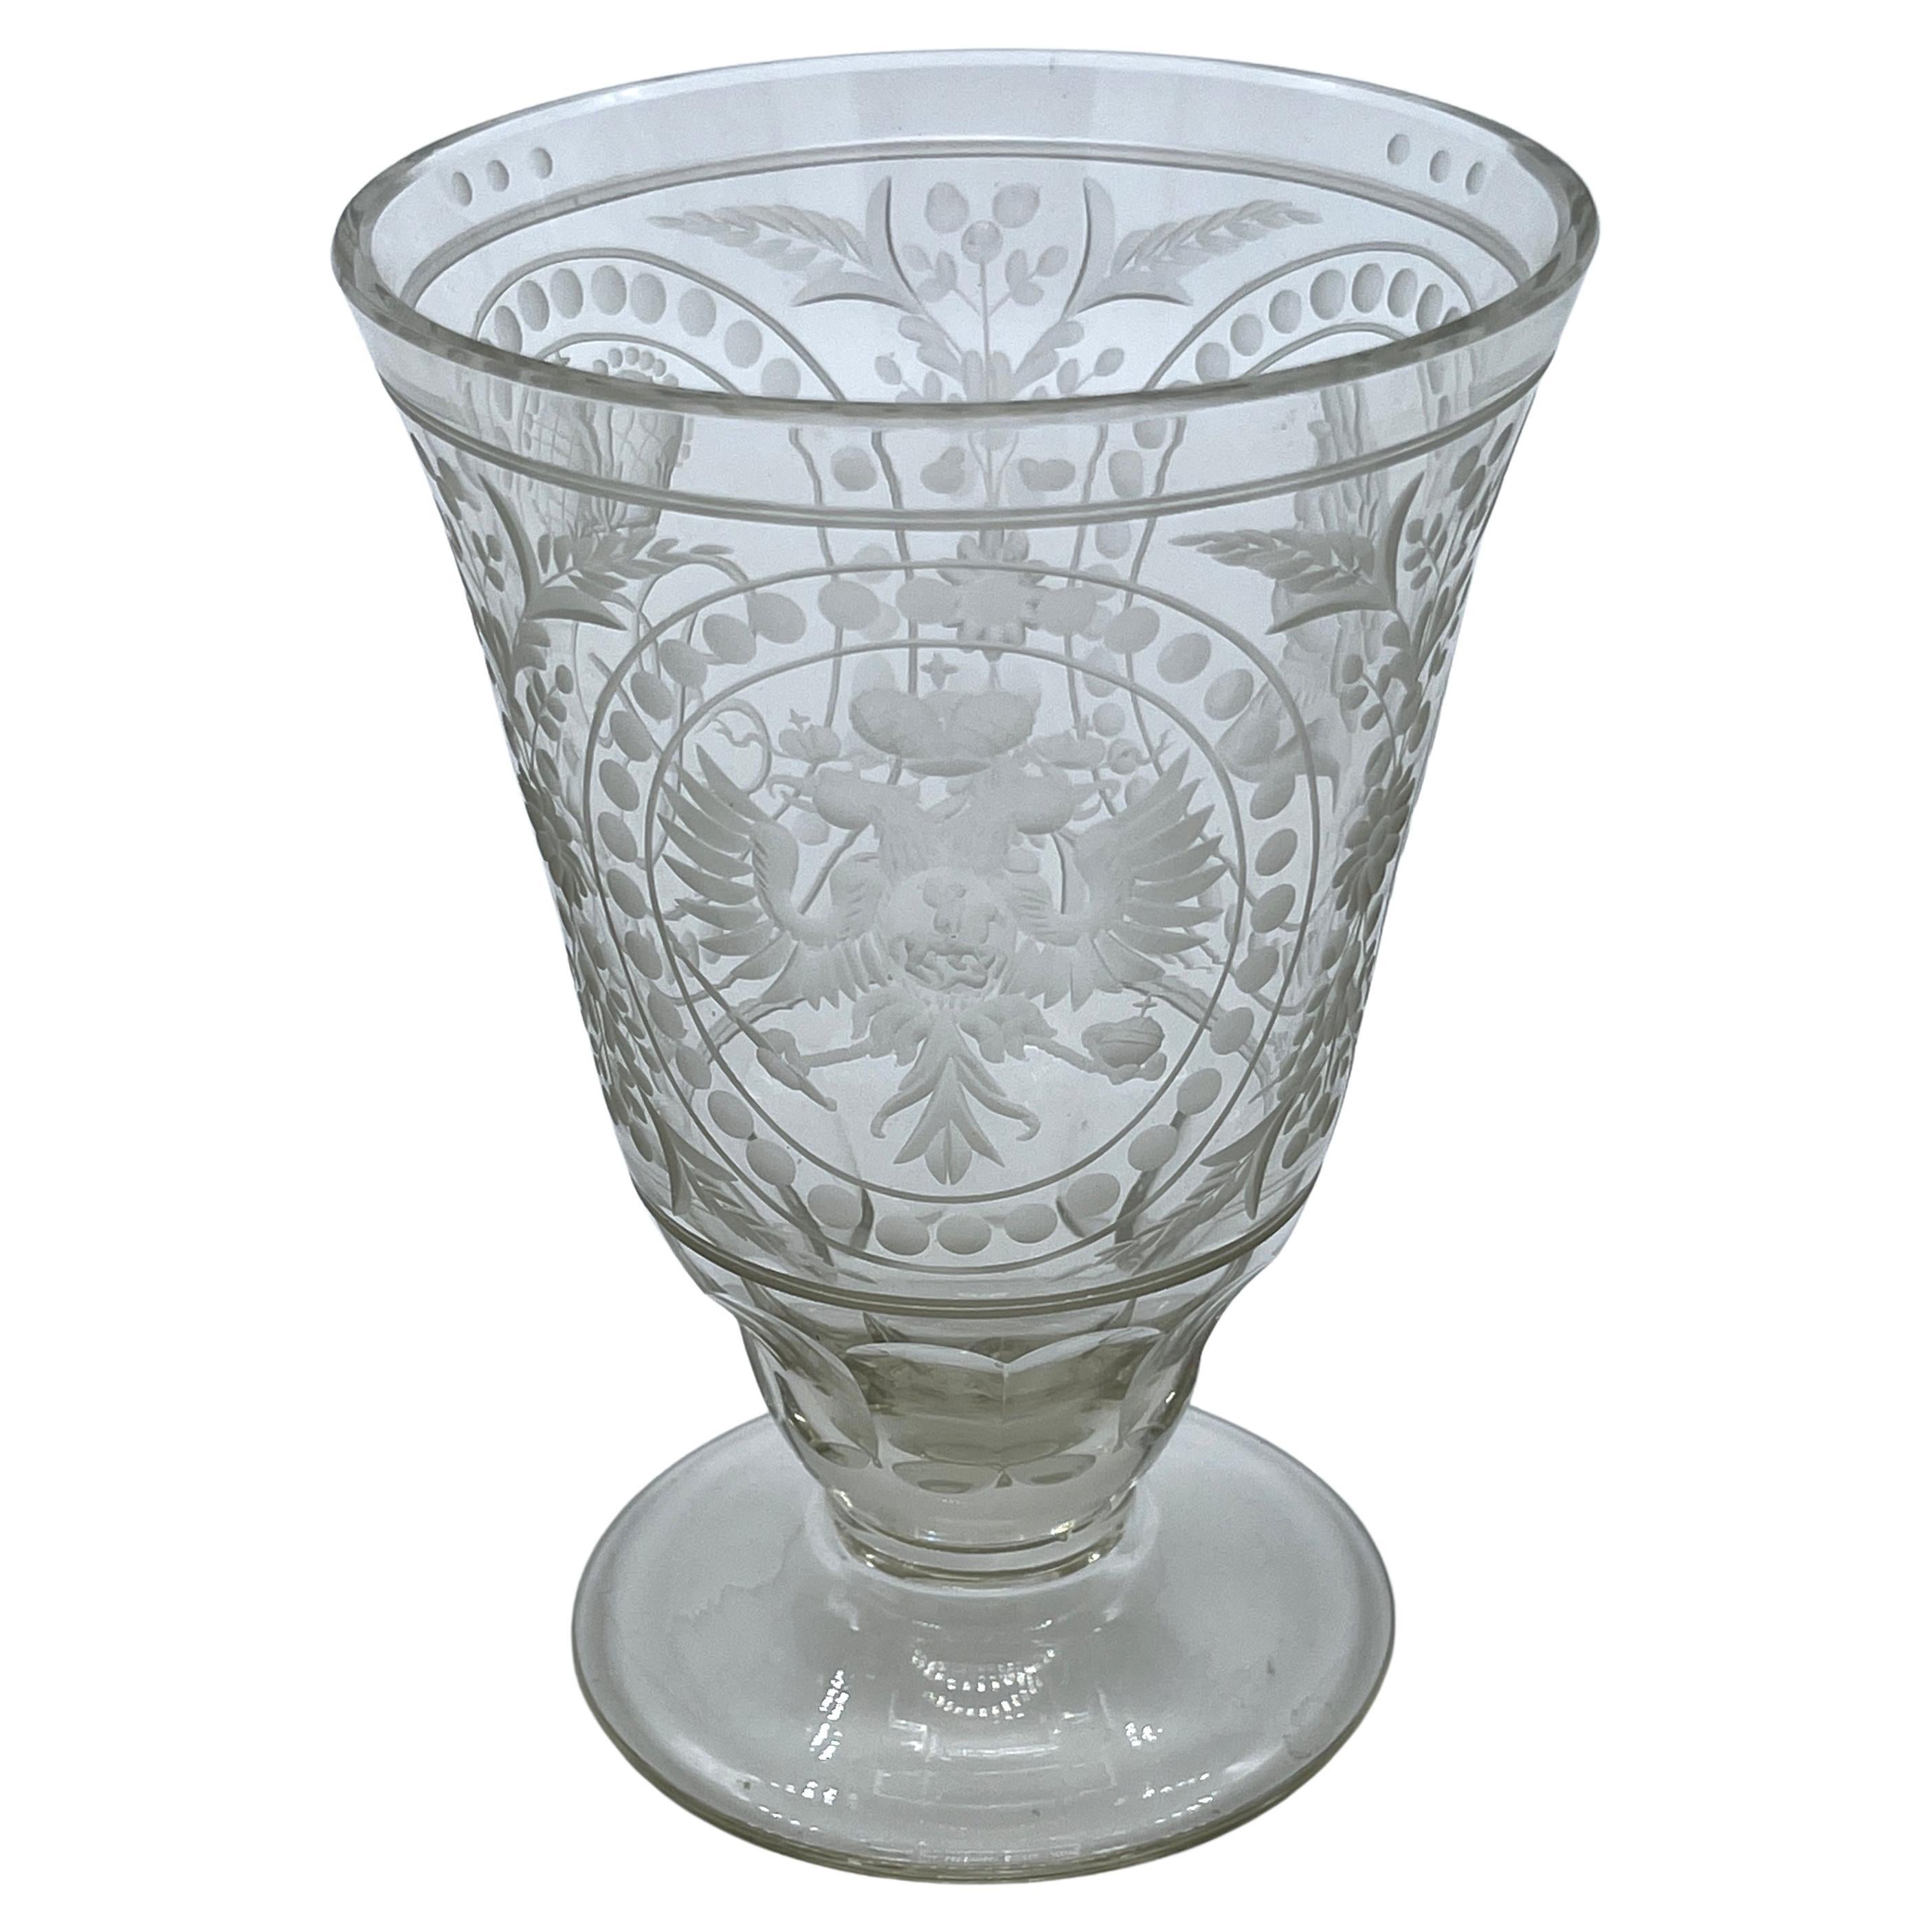 Gobelet russe en cristal gravé, commémoratif d'Alexander I+I, "Le Bienheureux"